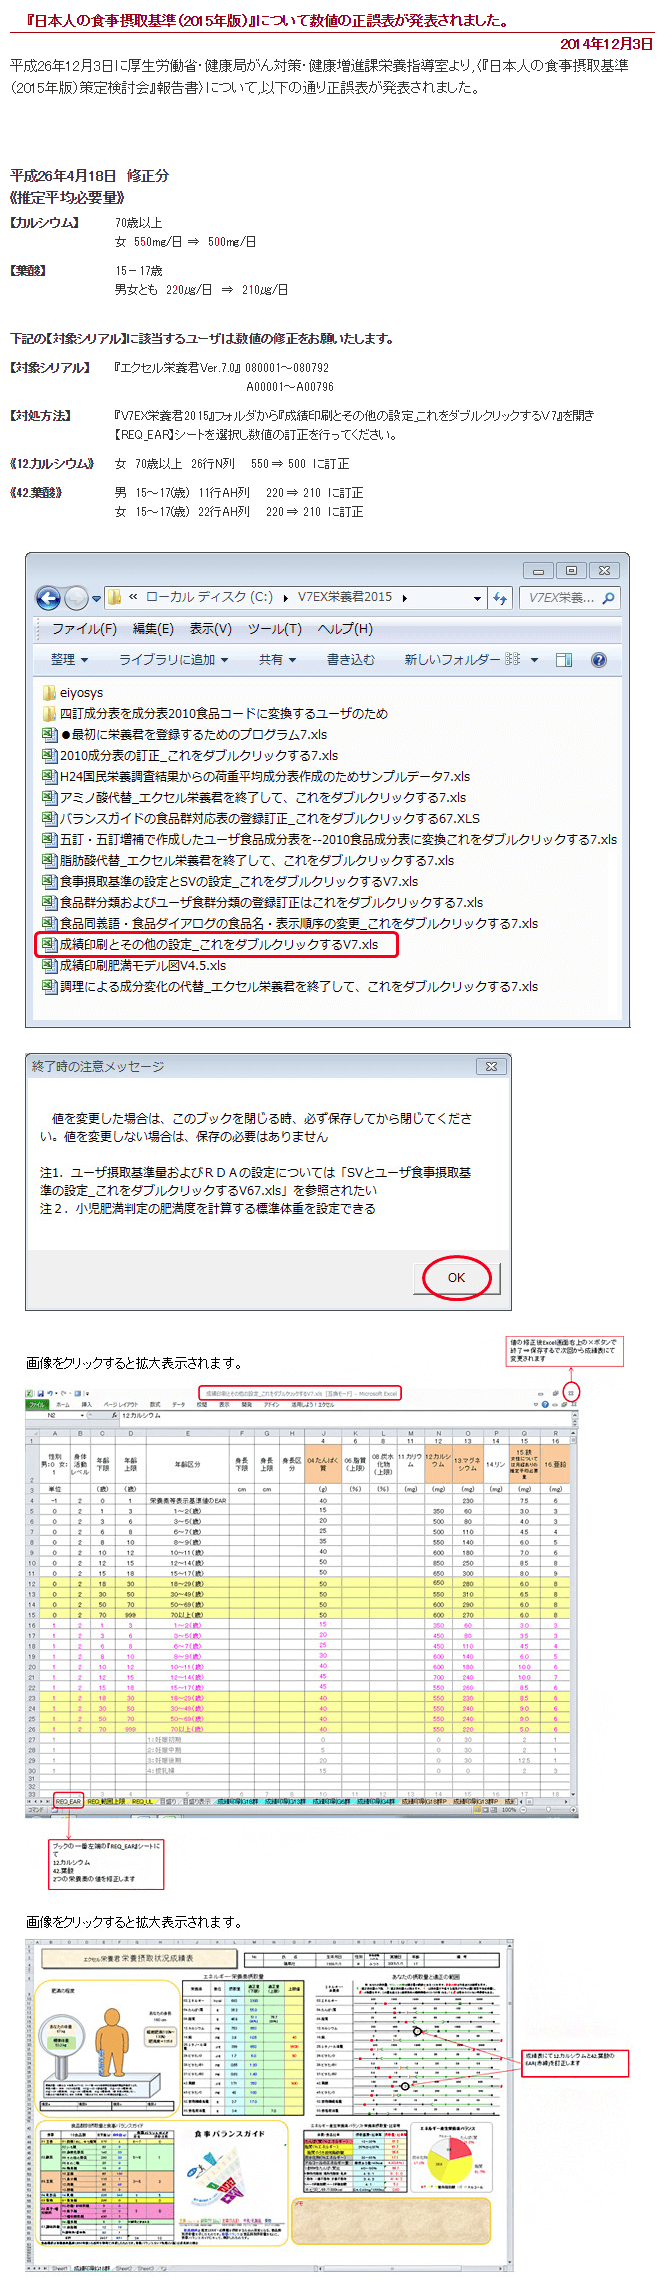 日本人の食事摂取基準（2015年版）』について数値の正誤表が発表され